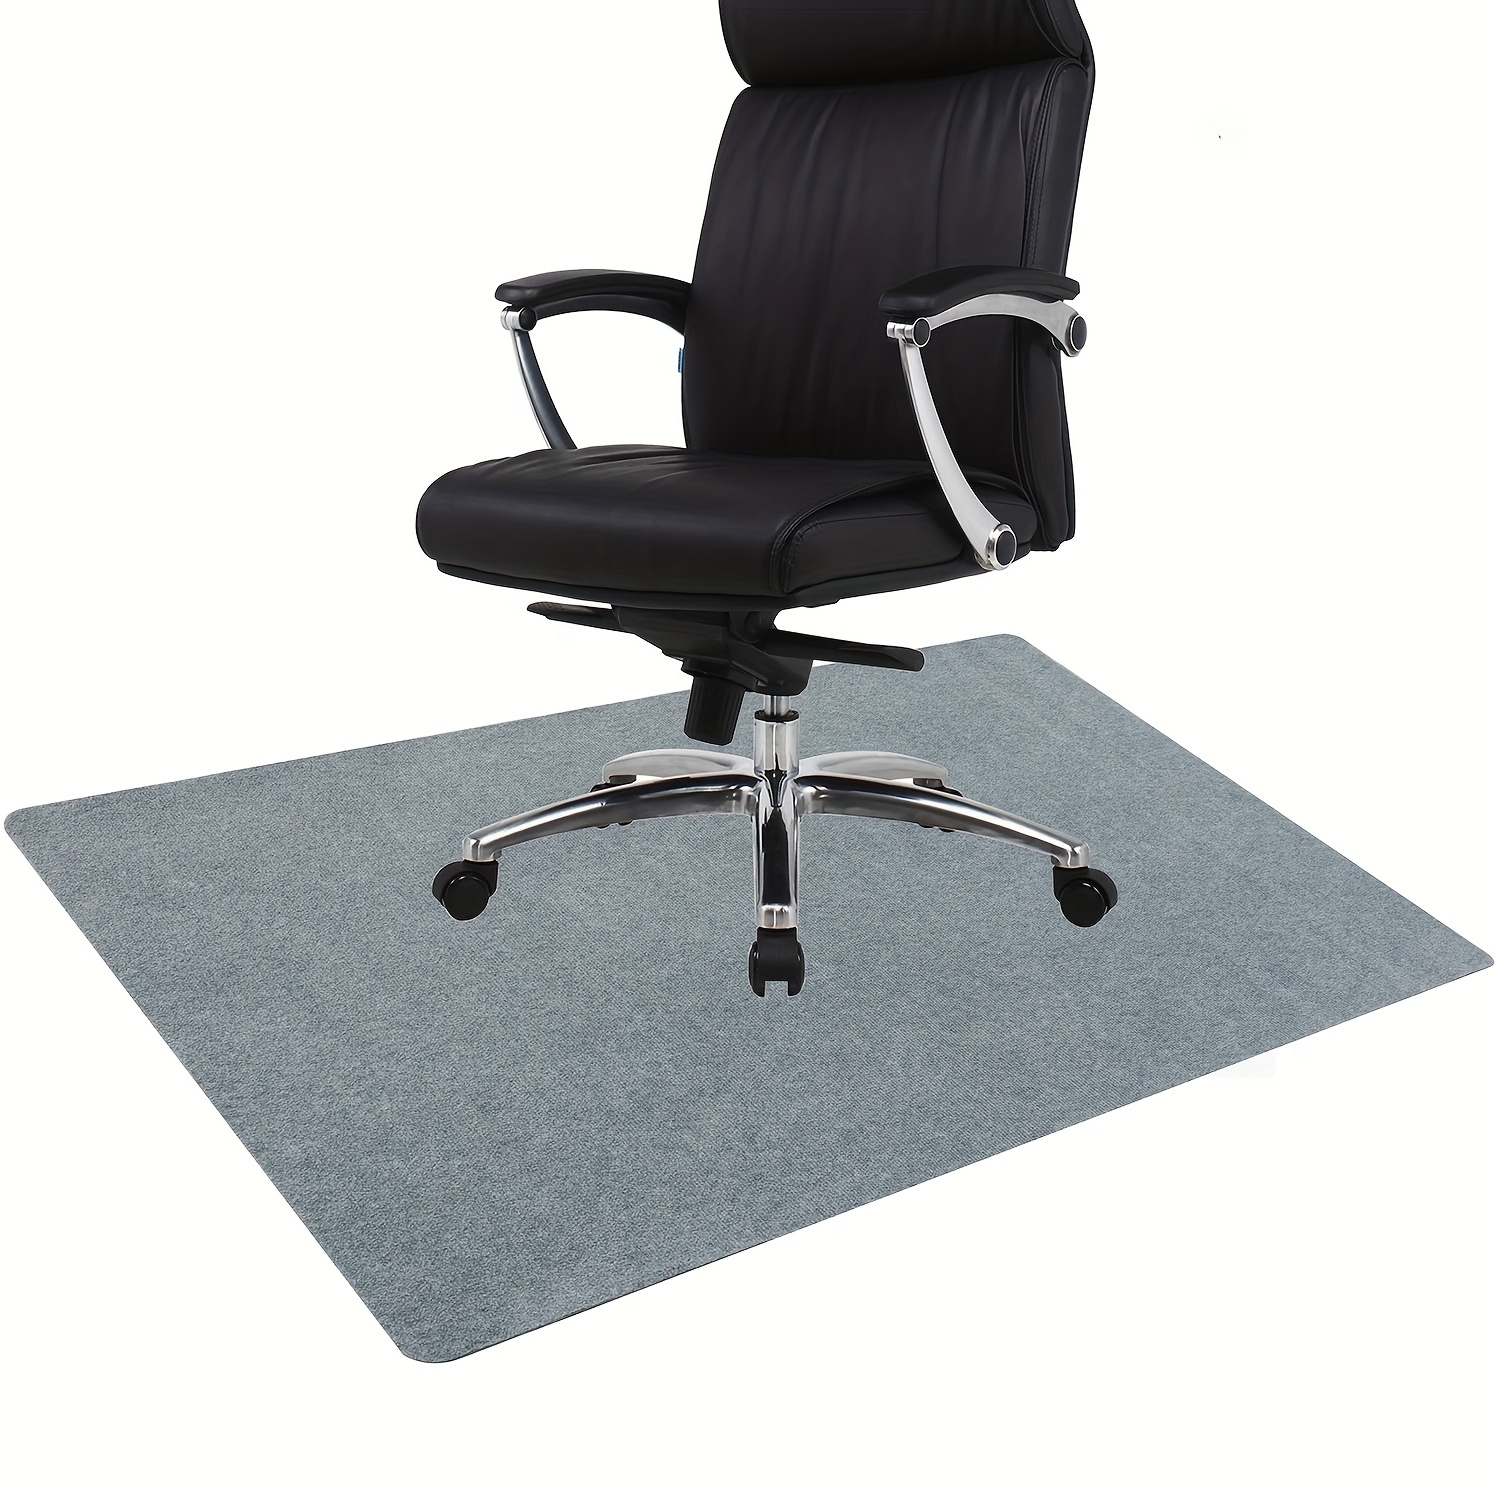  Tapete redondo negro y blanco para silla de oficina